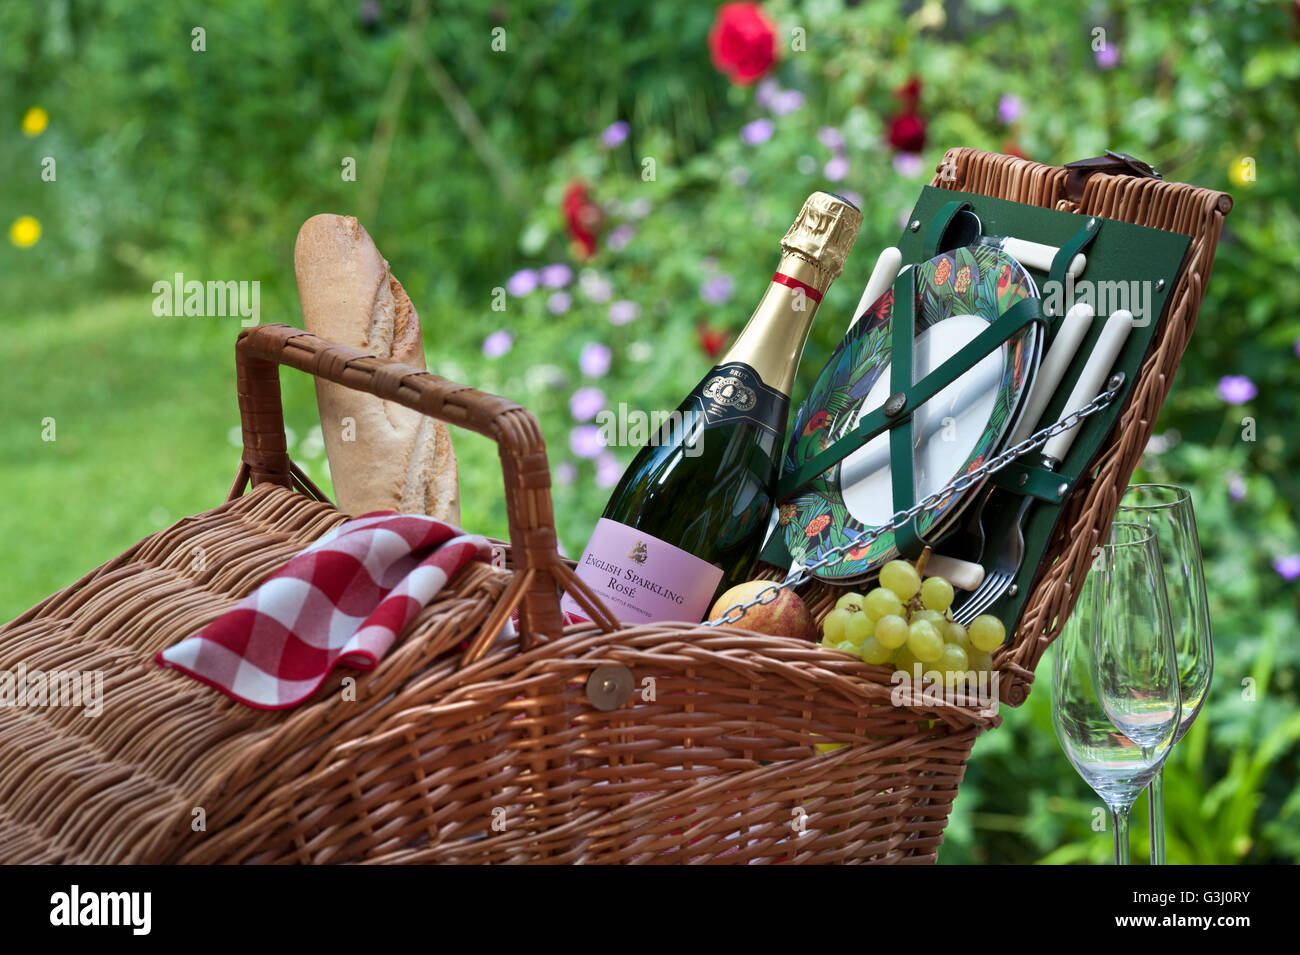 Panier de pique-nique Anglais Sparkling Rosé bouteille de vin et panier  pique-nique en osier à sunny jardin fleuri situation Photo Stock - Alamy